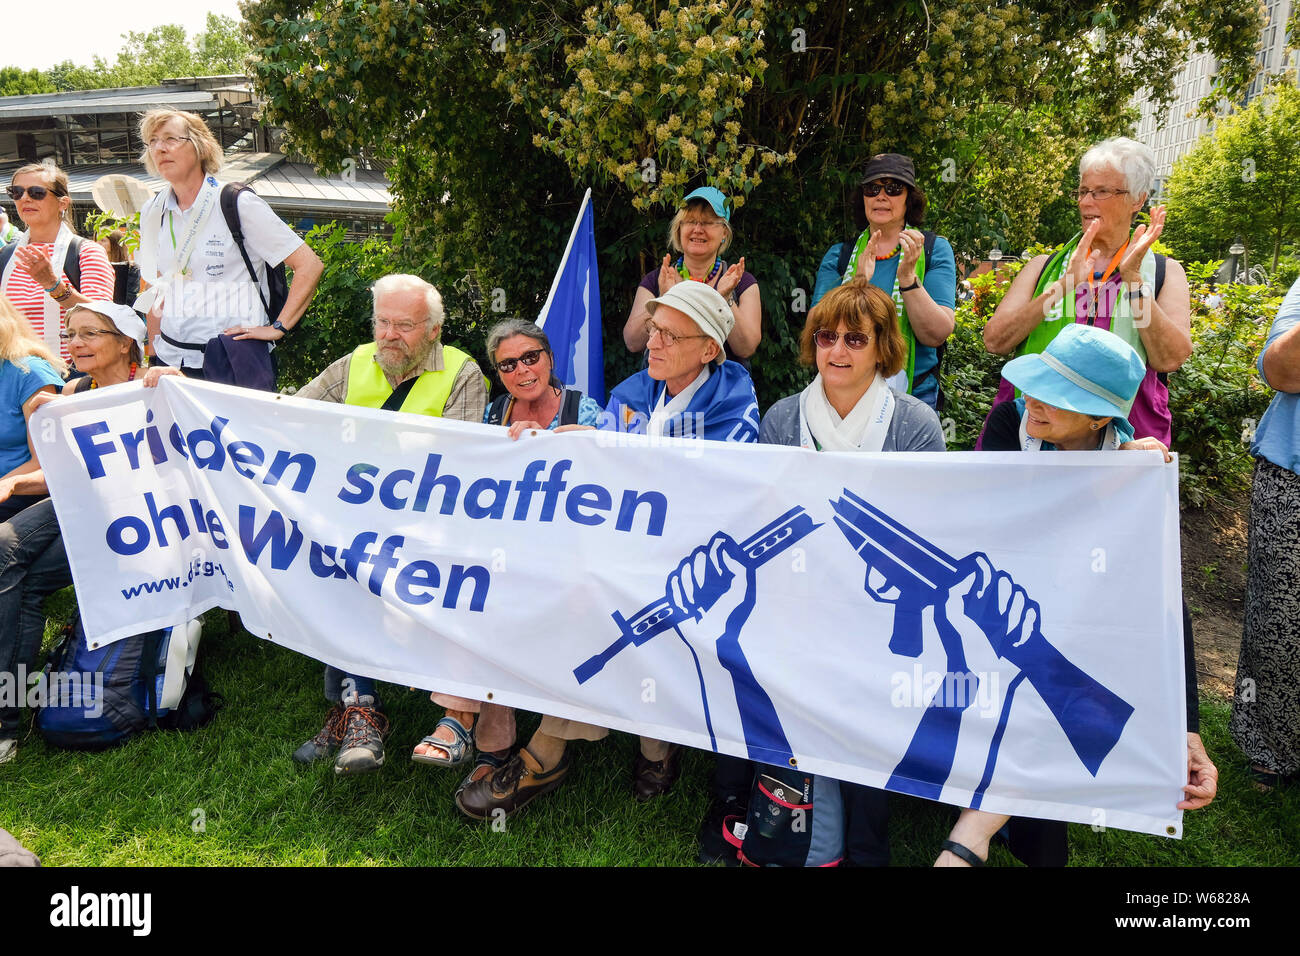 Friedensaktivisten mit Fahne mit dem Slogan "Frieden ohne Waffen" während einer Friedensdemonstration an der Deutsche Evangelische Kirchentag 2019 in Dortmund, Deutschland Stockfoto